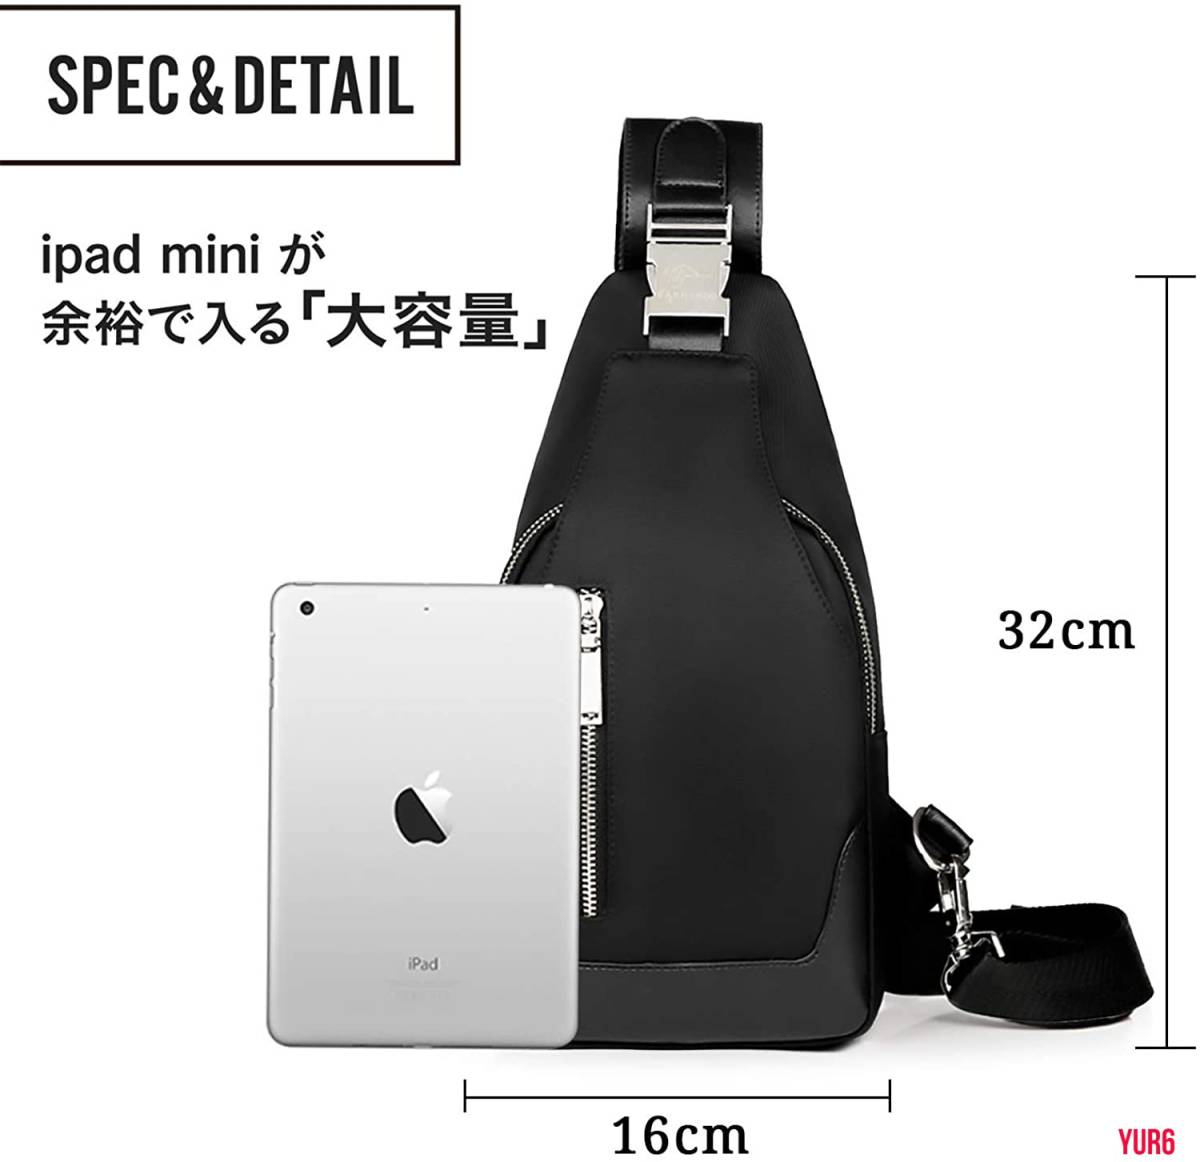 ボディバッグ メンズ 斜めがけ 大容量 軽量 防水 ワンショルダーバッグ 肩掛けバッグ 盗難防止 iPadmini収納可能 ブラック